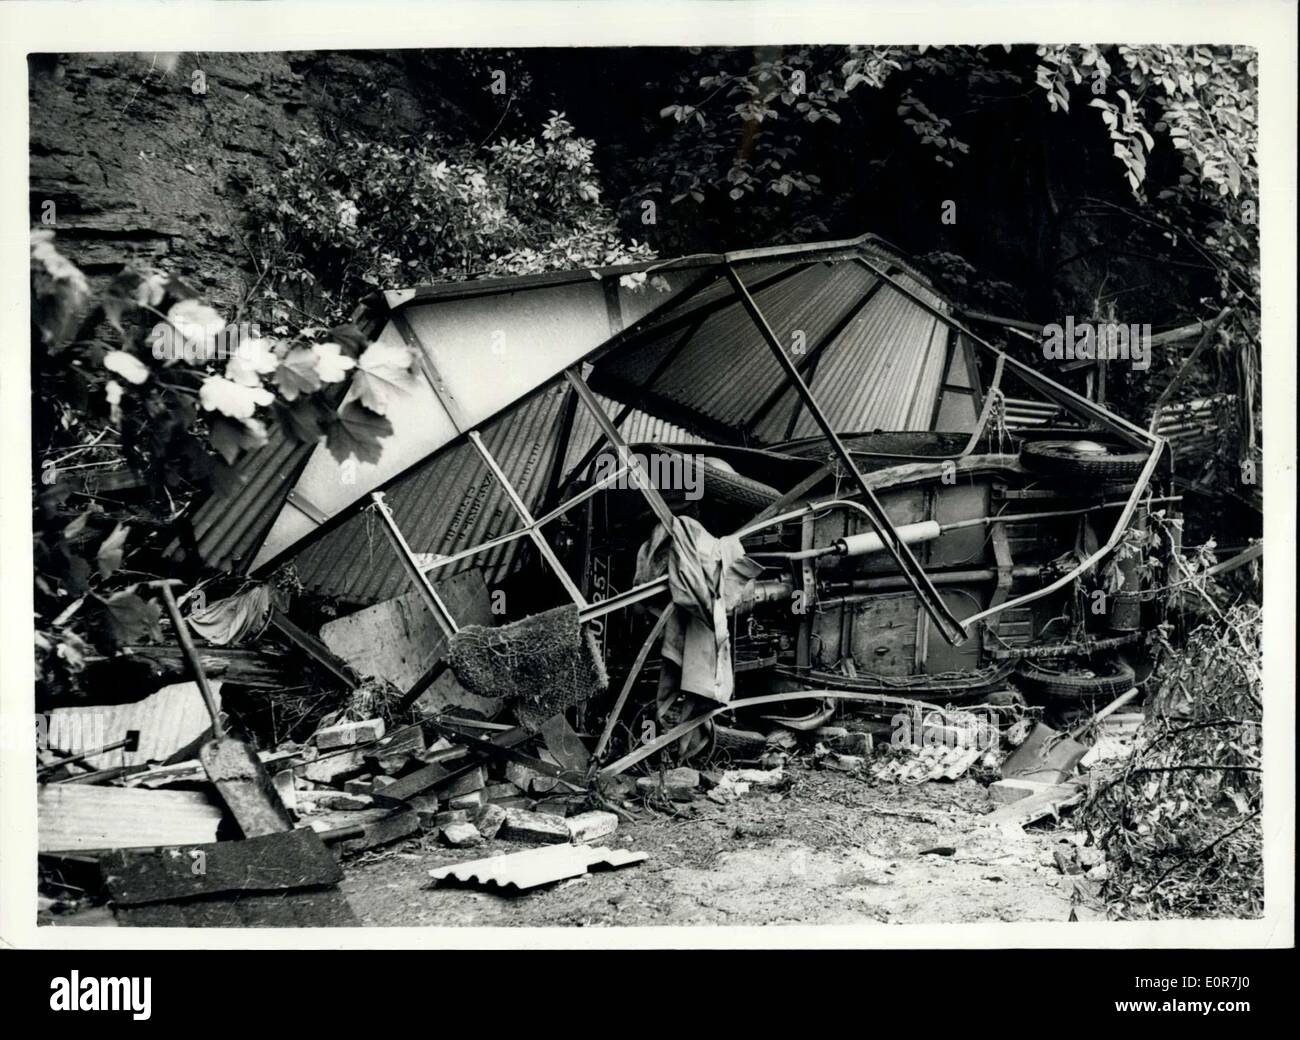 Juillet 04, 1958 - Location de garage et emportés par le Sheffield inondations : photo, un garage et une fois qu'il avait été lavé à 200 m de son amarrage à Moscou, cottages, Abbeydale, Sheffield durant la fortes inondations qui couvre de vastes étendues à la suite des fortes pluies. Banque D'Images